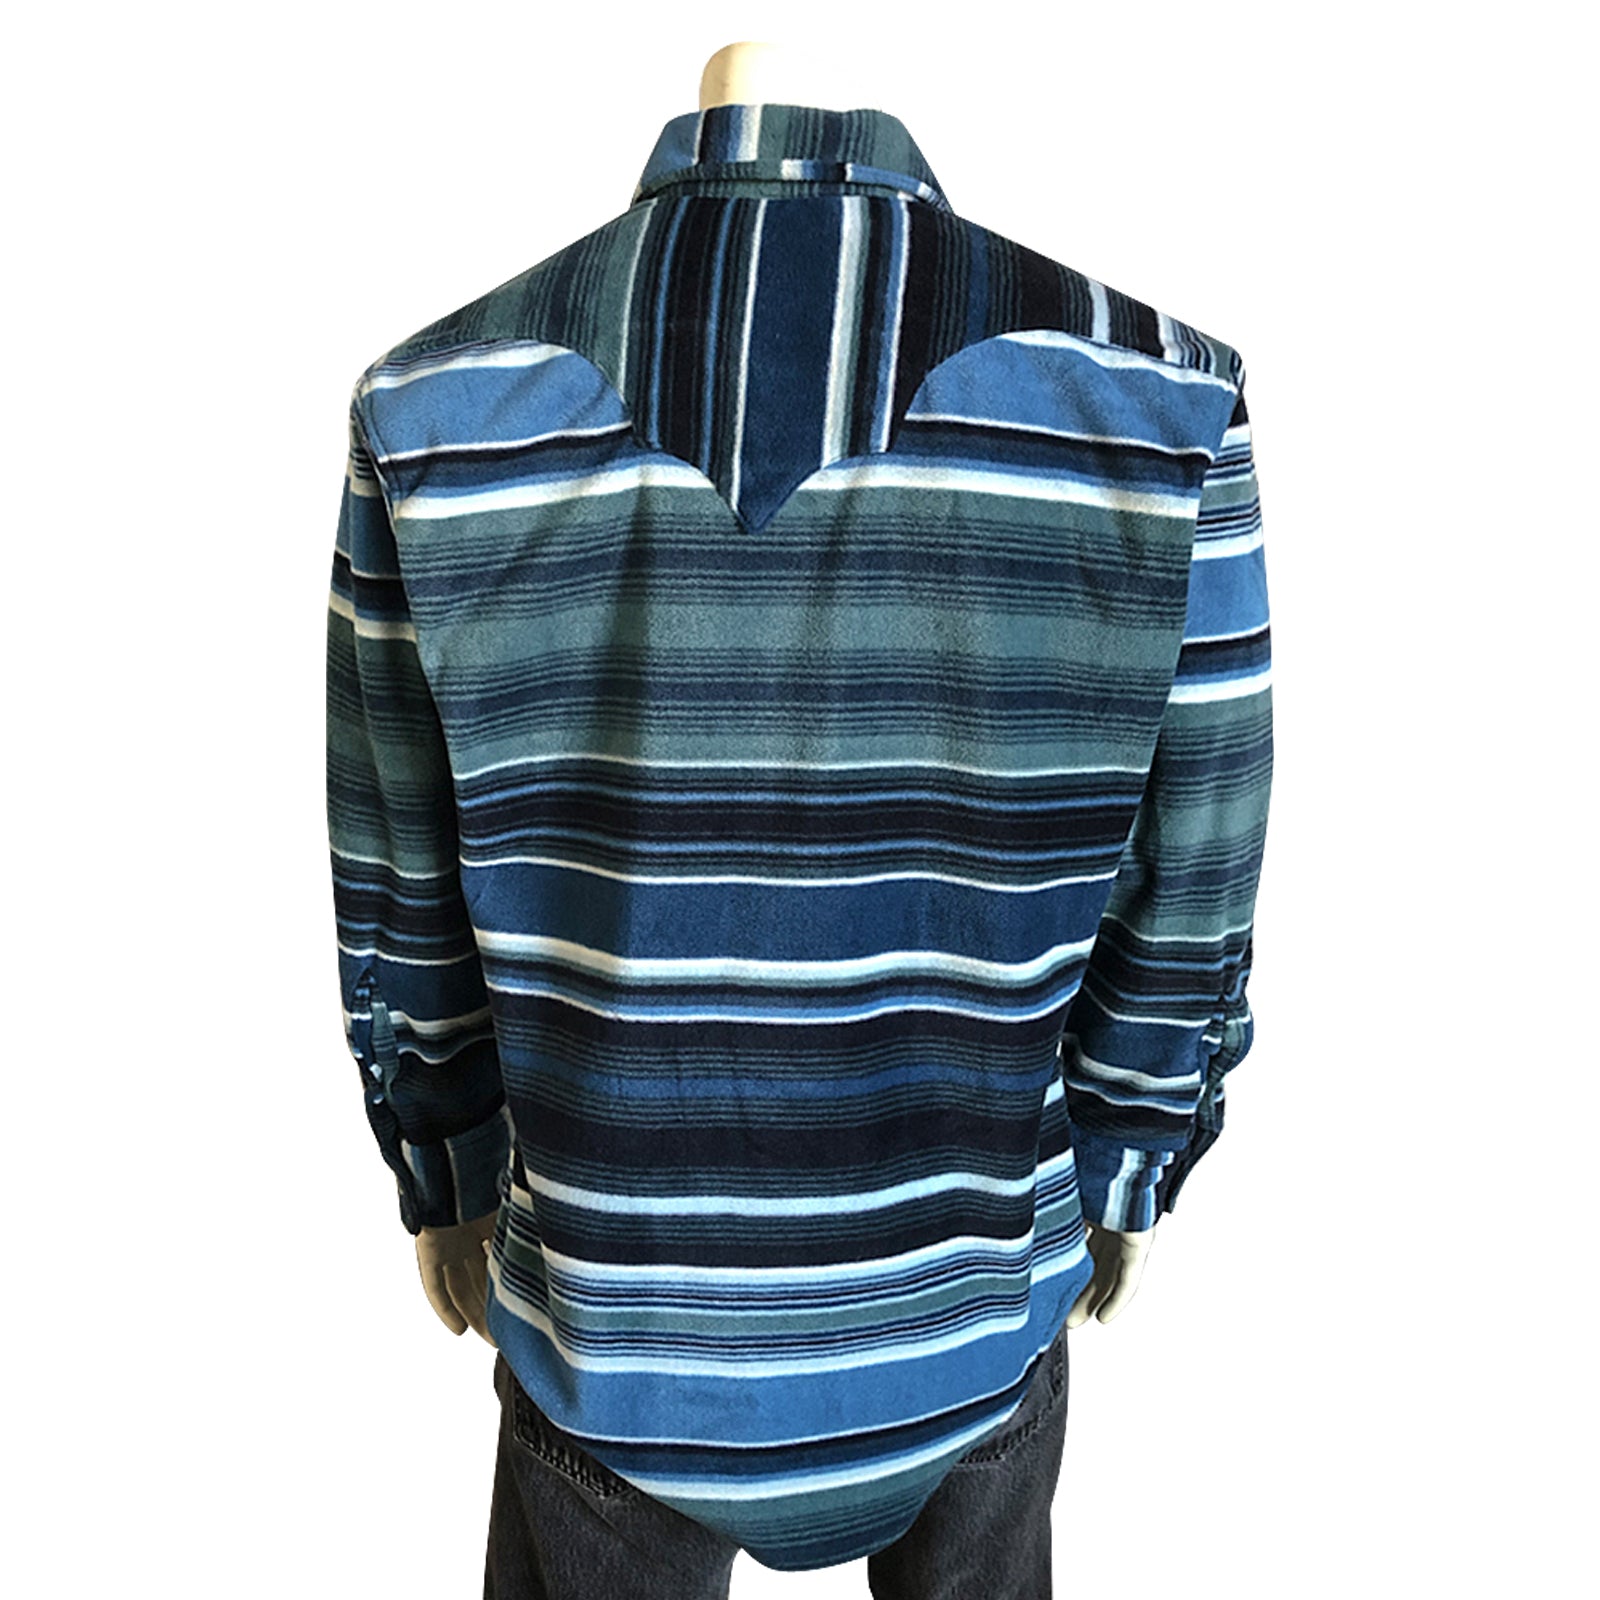 Men's Serape Pattern Fleece Western Shirt in Blue & Navy - Rockmount